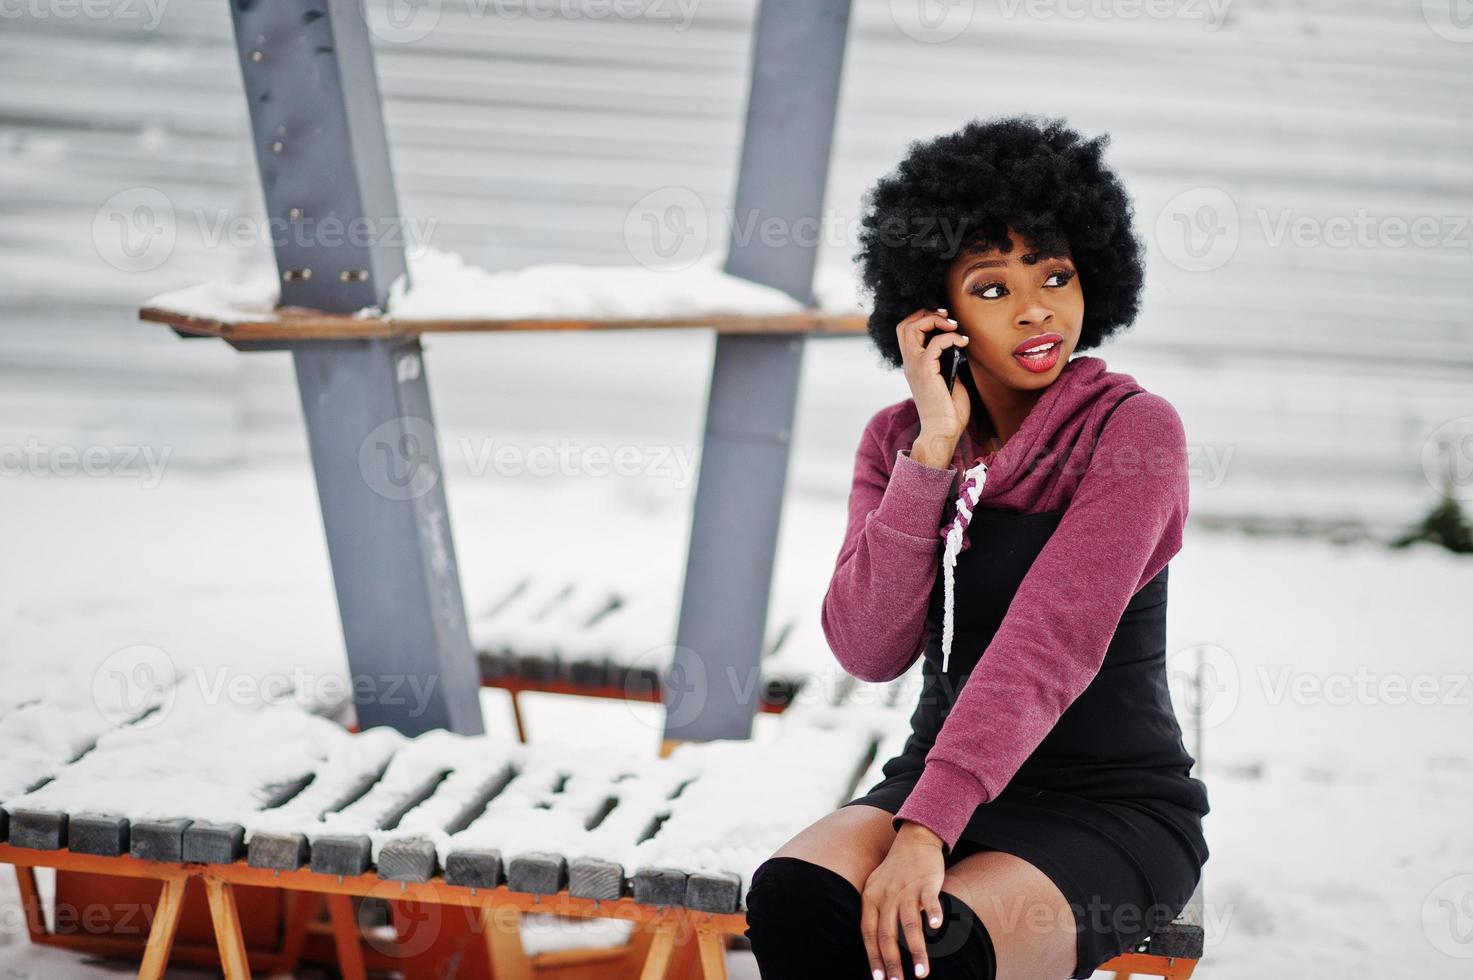 capelli ricci donna afroamericana in posa al giorno d'inverno, seduta su una panchina e parlando al cellulare. foto